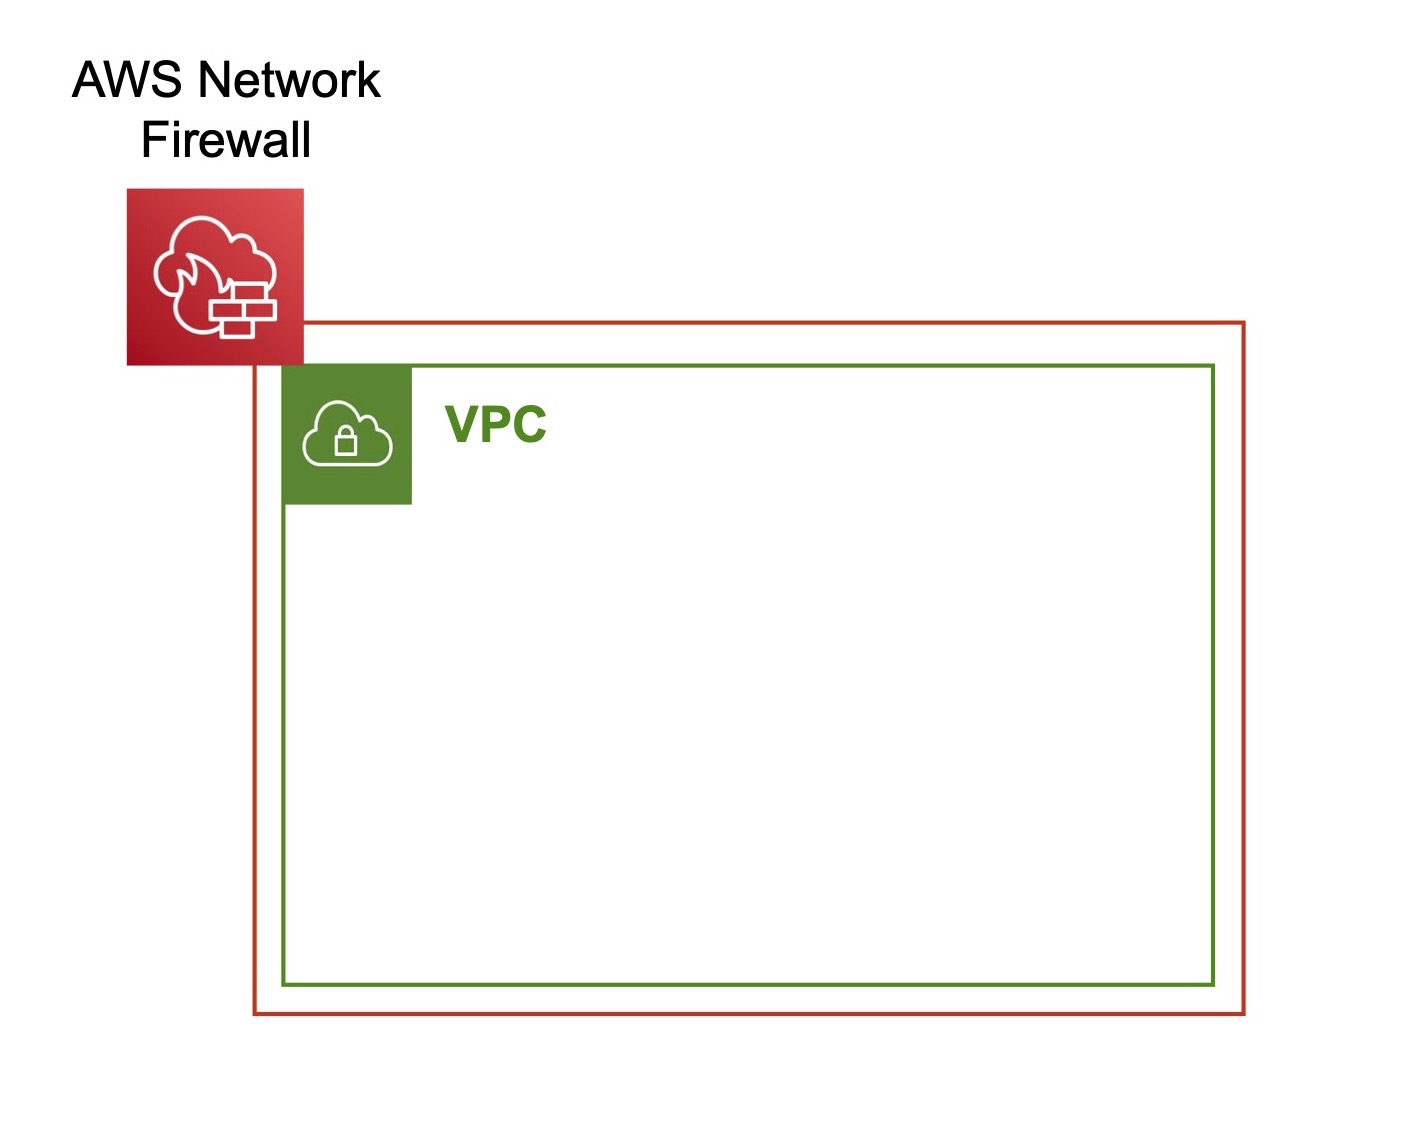 Illustration de la zone VPC en vert. Cette dernière est entourée par un encadrement rouge et le logo AWS Network Firewall.